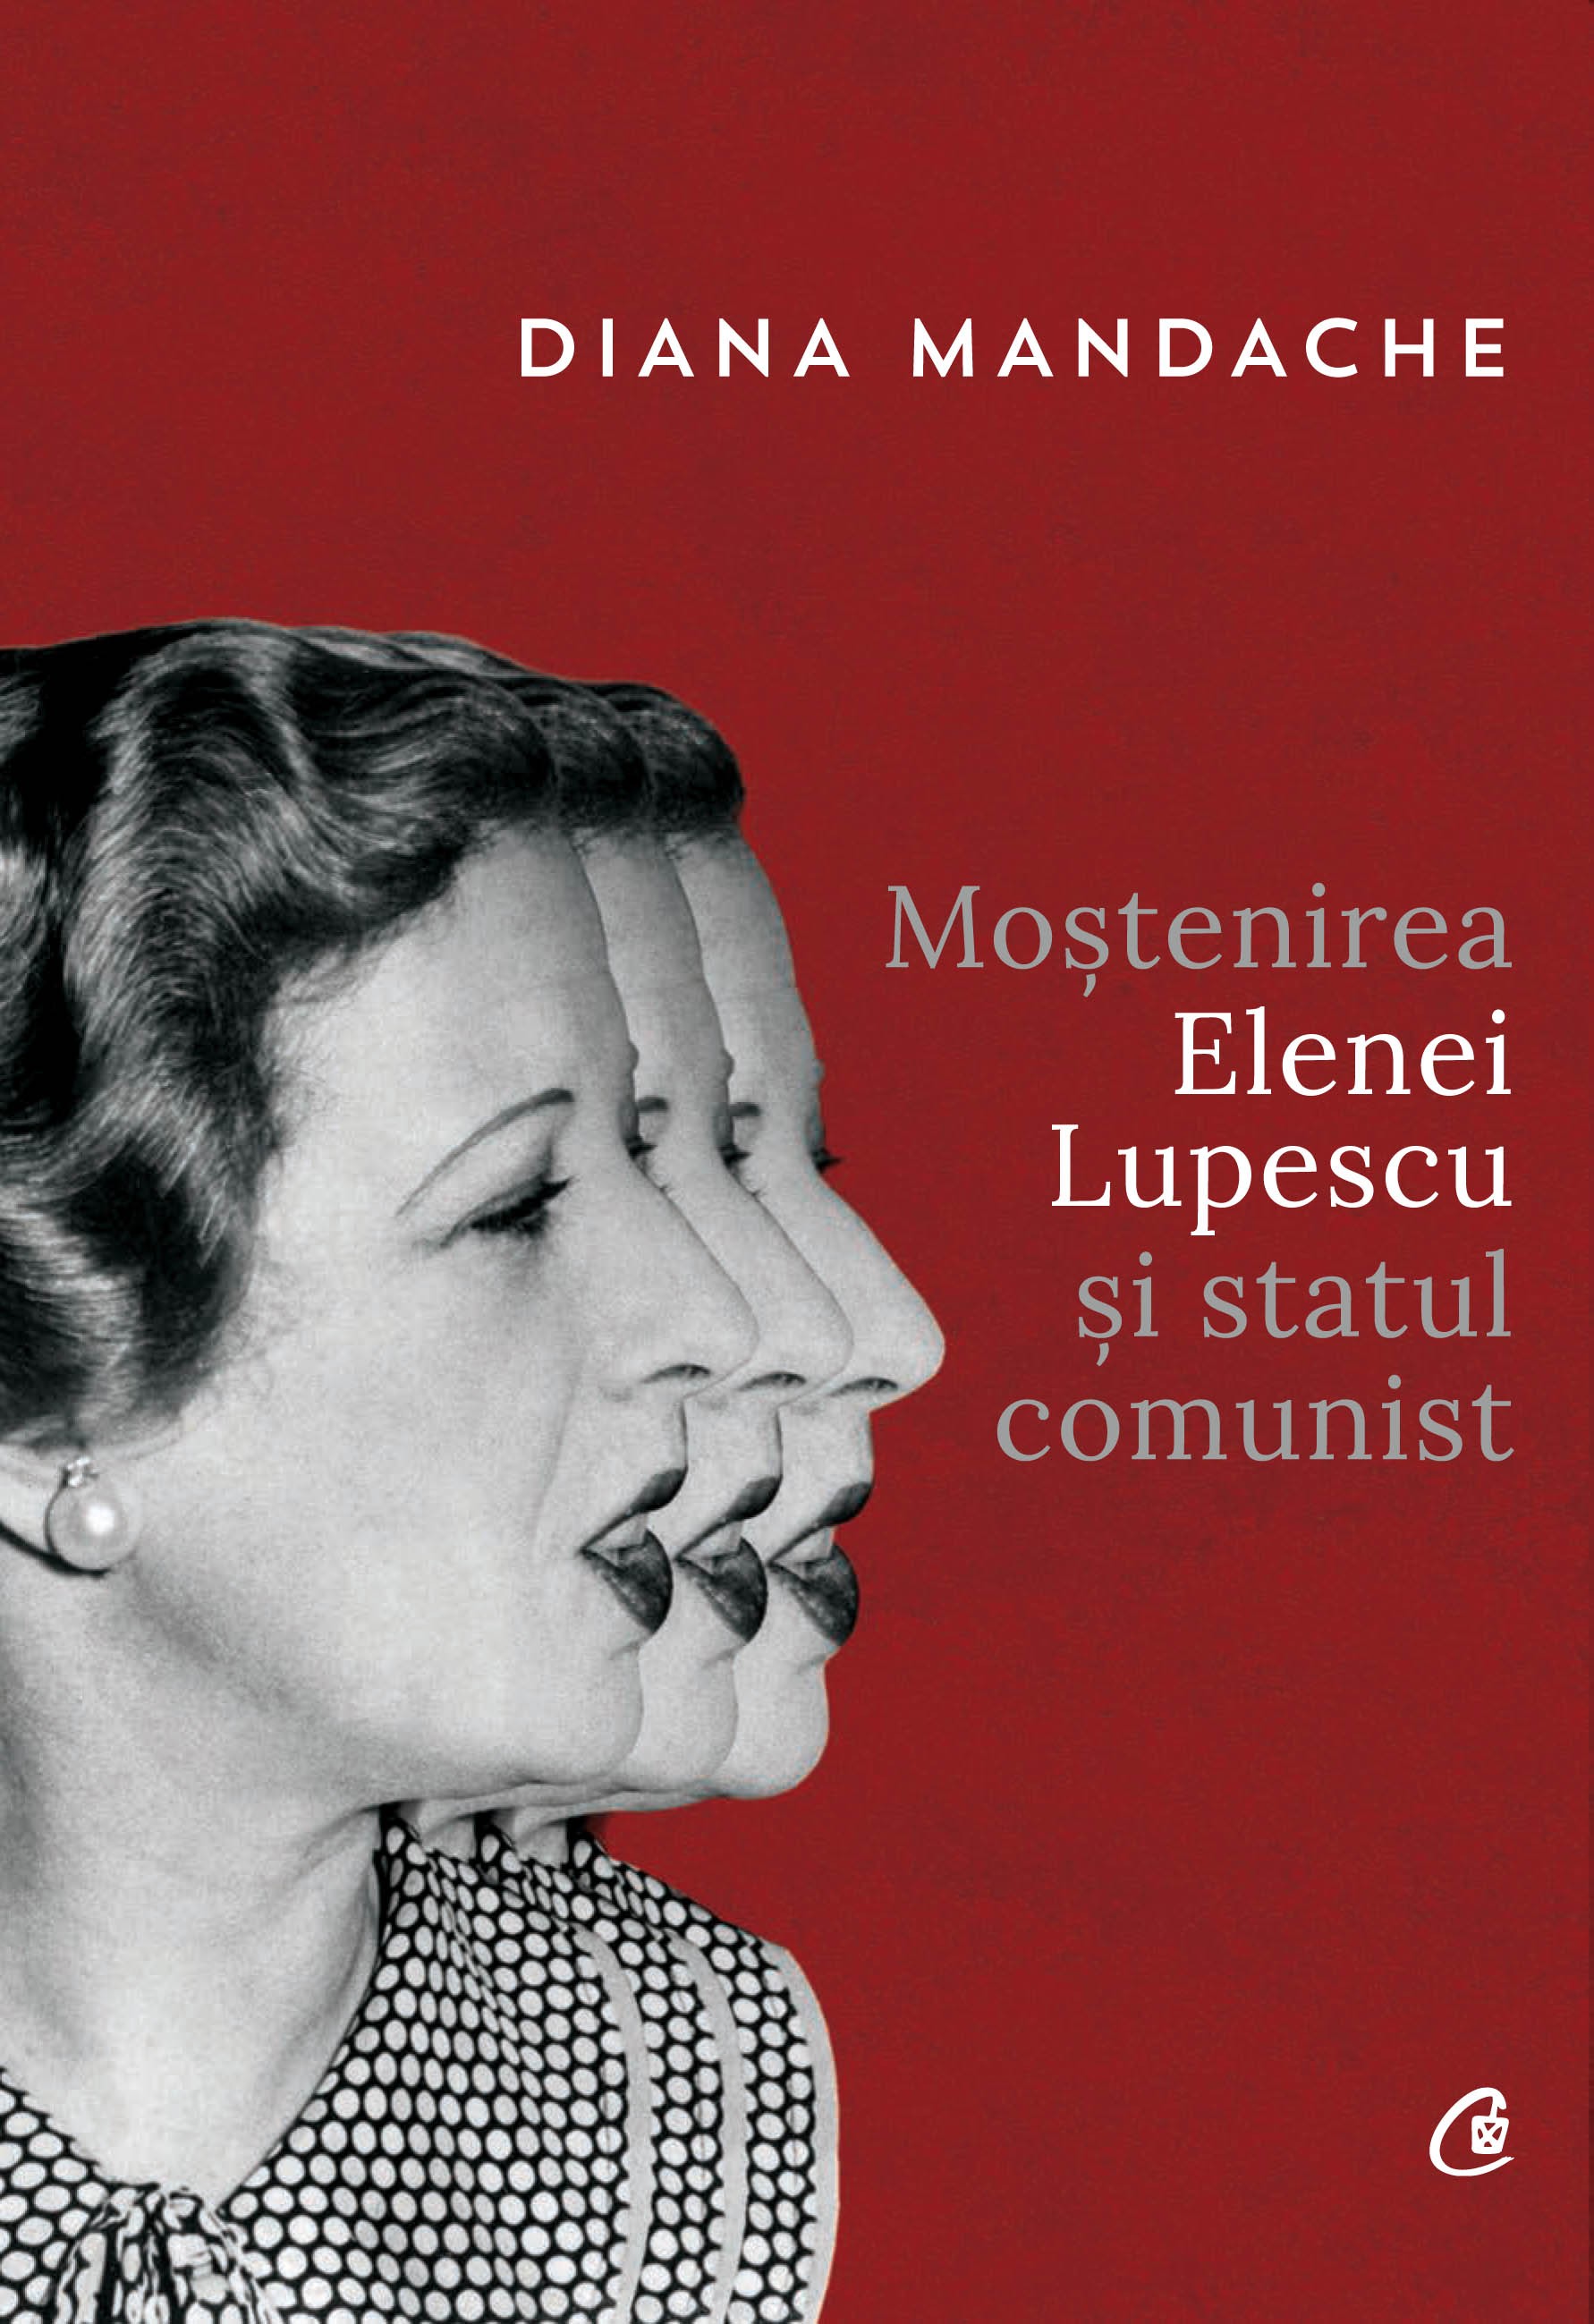 Mostenirea Elenei Lupescu si Statul Comunist | Diana Mandache carturesti.ro Carte